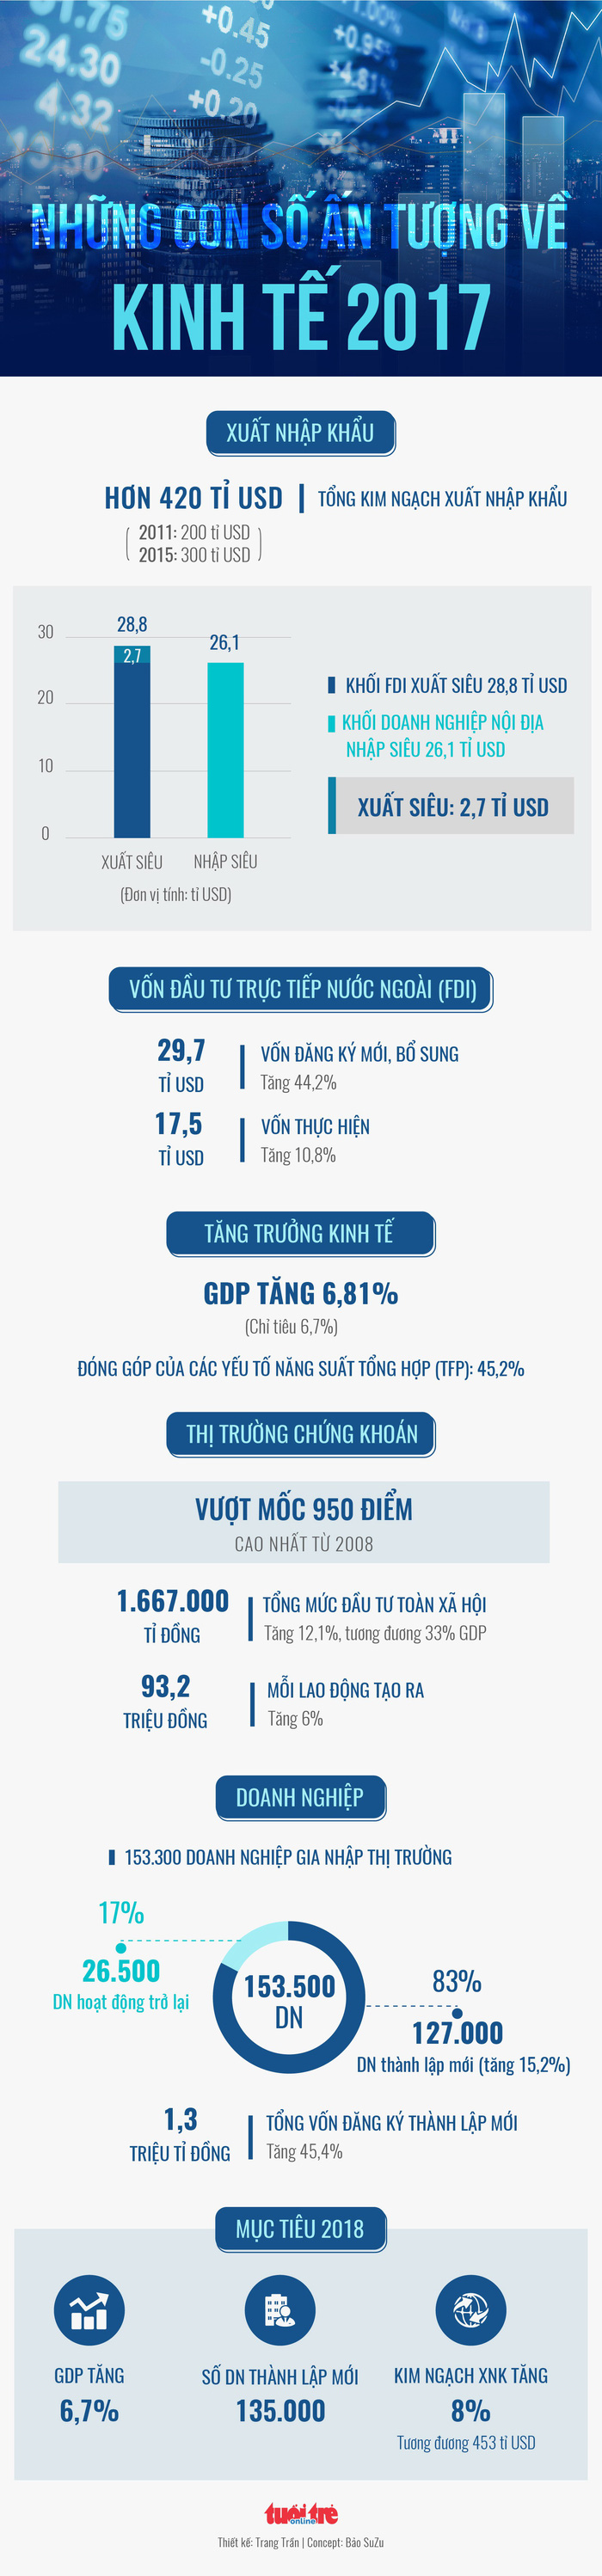 Những con số ấn tượng kinh tế Việt Nam 2017 - Ảnh 1.